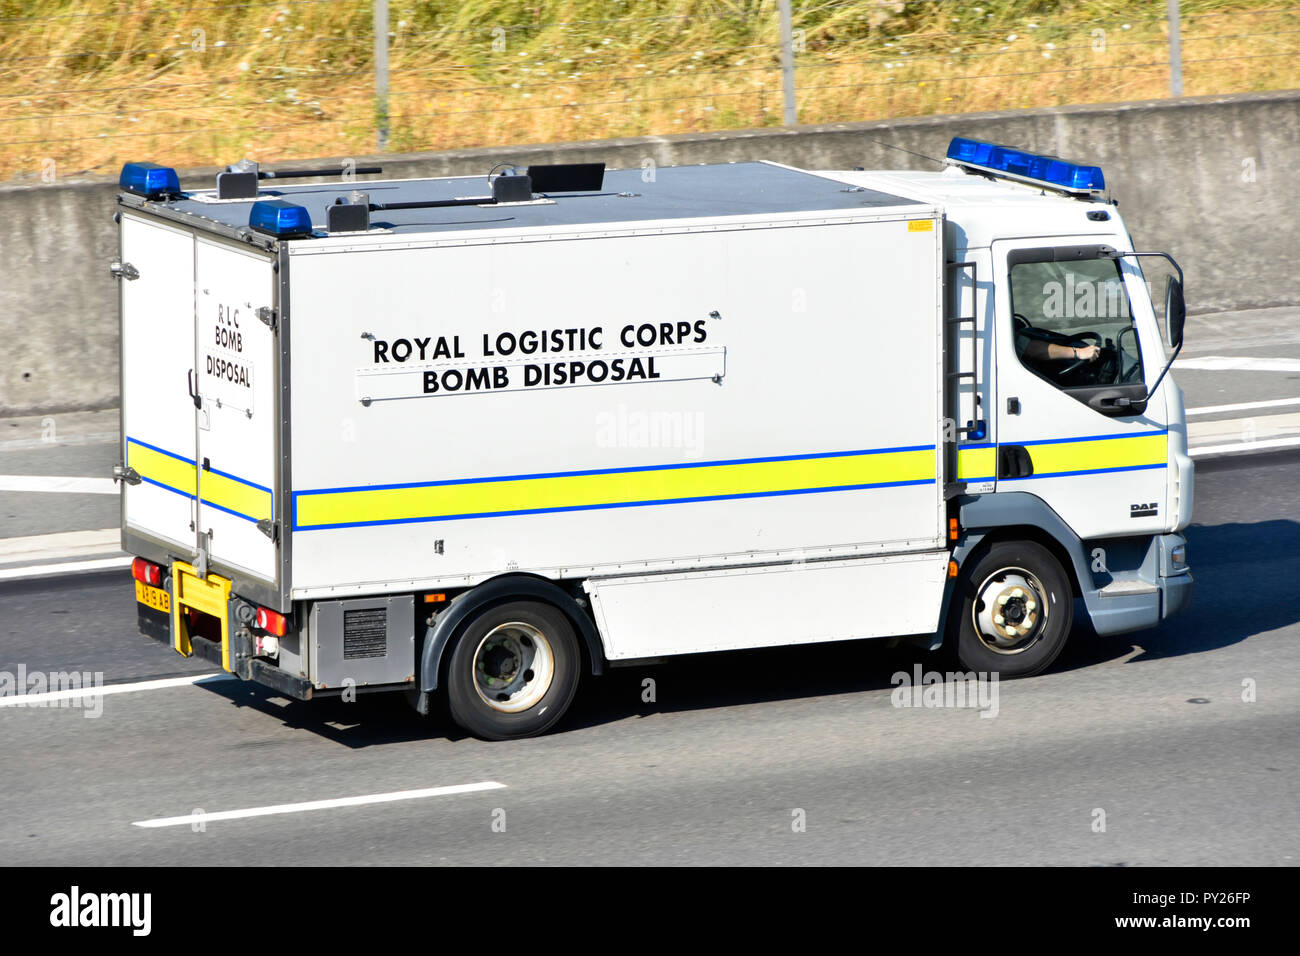 Vue latérale armée britannique Royal Logistic corps Bomb Elimination équipe de secours camion de l'armée britannique conduite le long de l'autoroute anglaise Essex Angleterre Royaume-Uni Banque D'Images